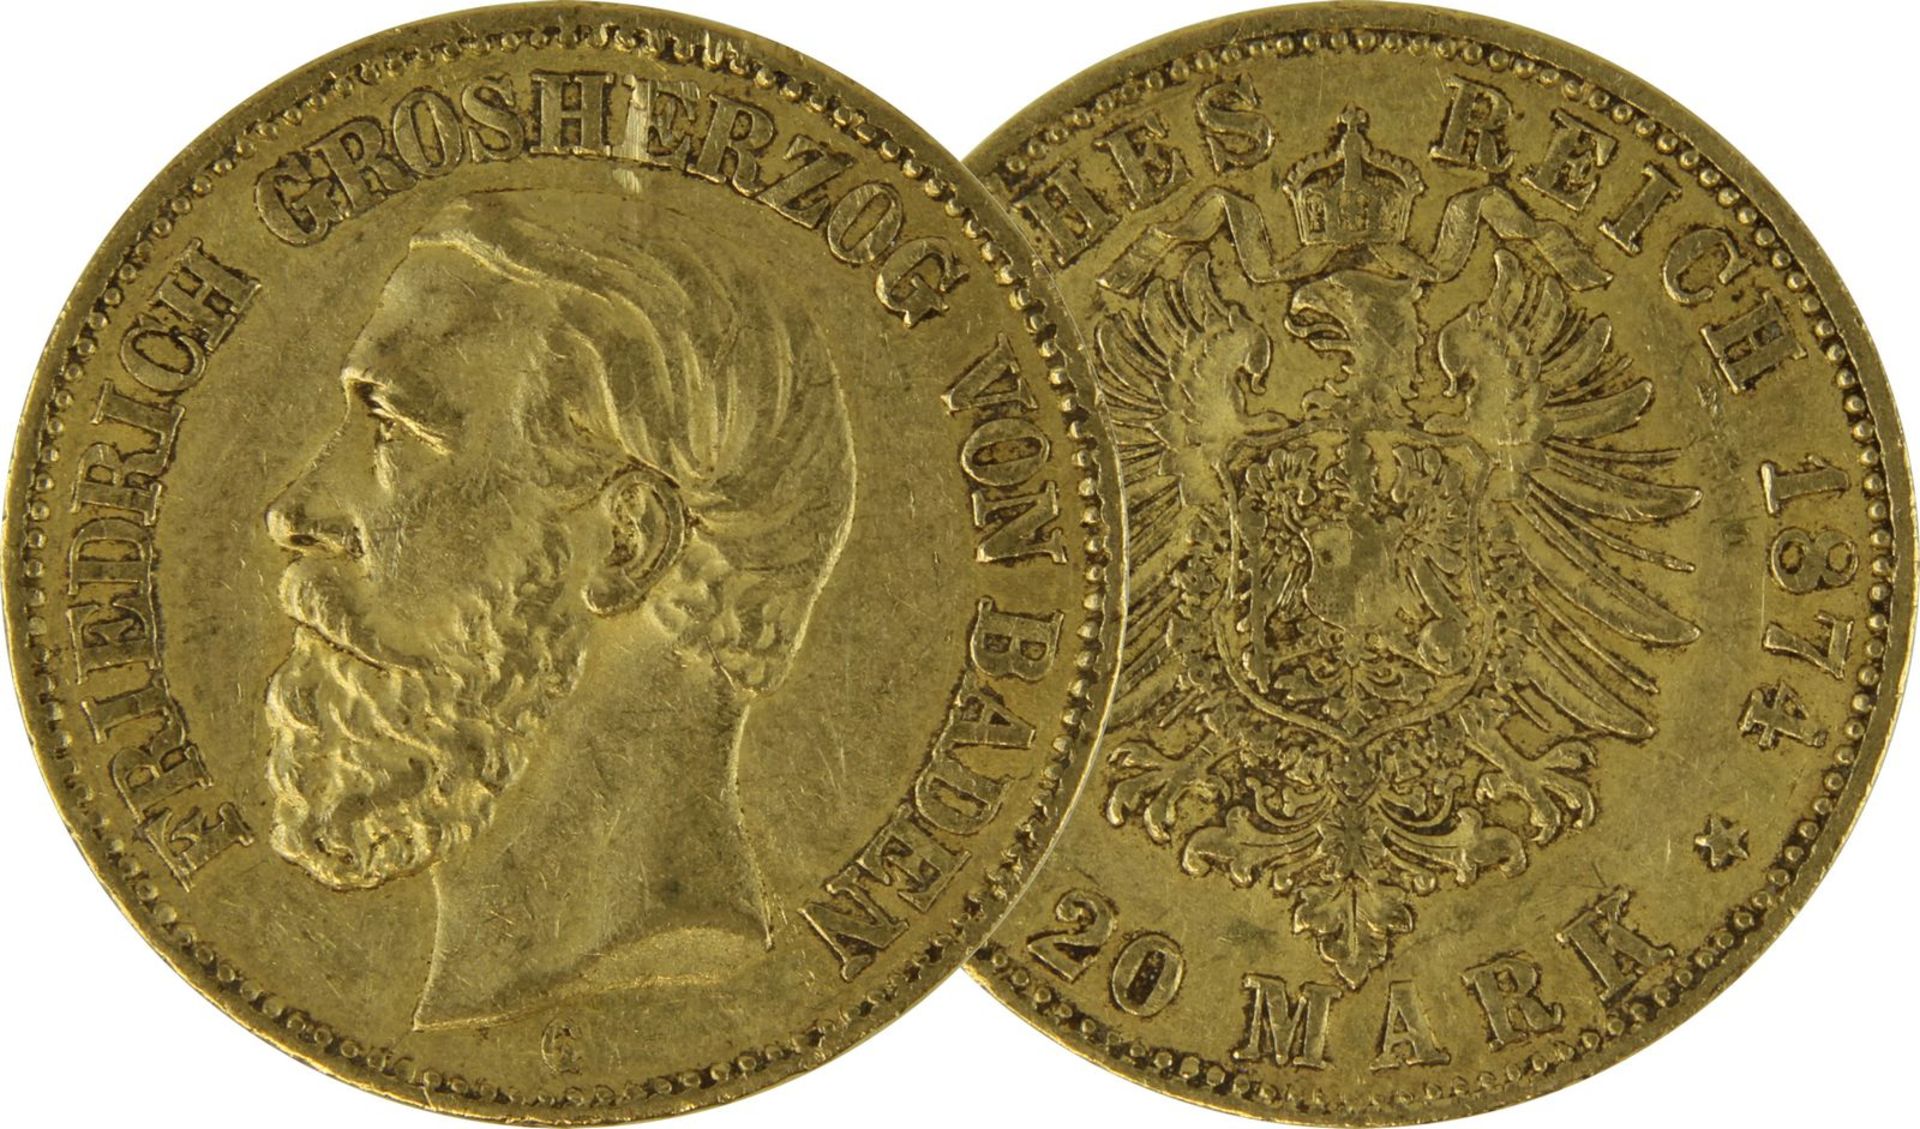 Goldmünze zu 20 Mark, Baden - Deutsches Reich 1874, Avers: Kopf Friedrich Grosherzog von Baden